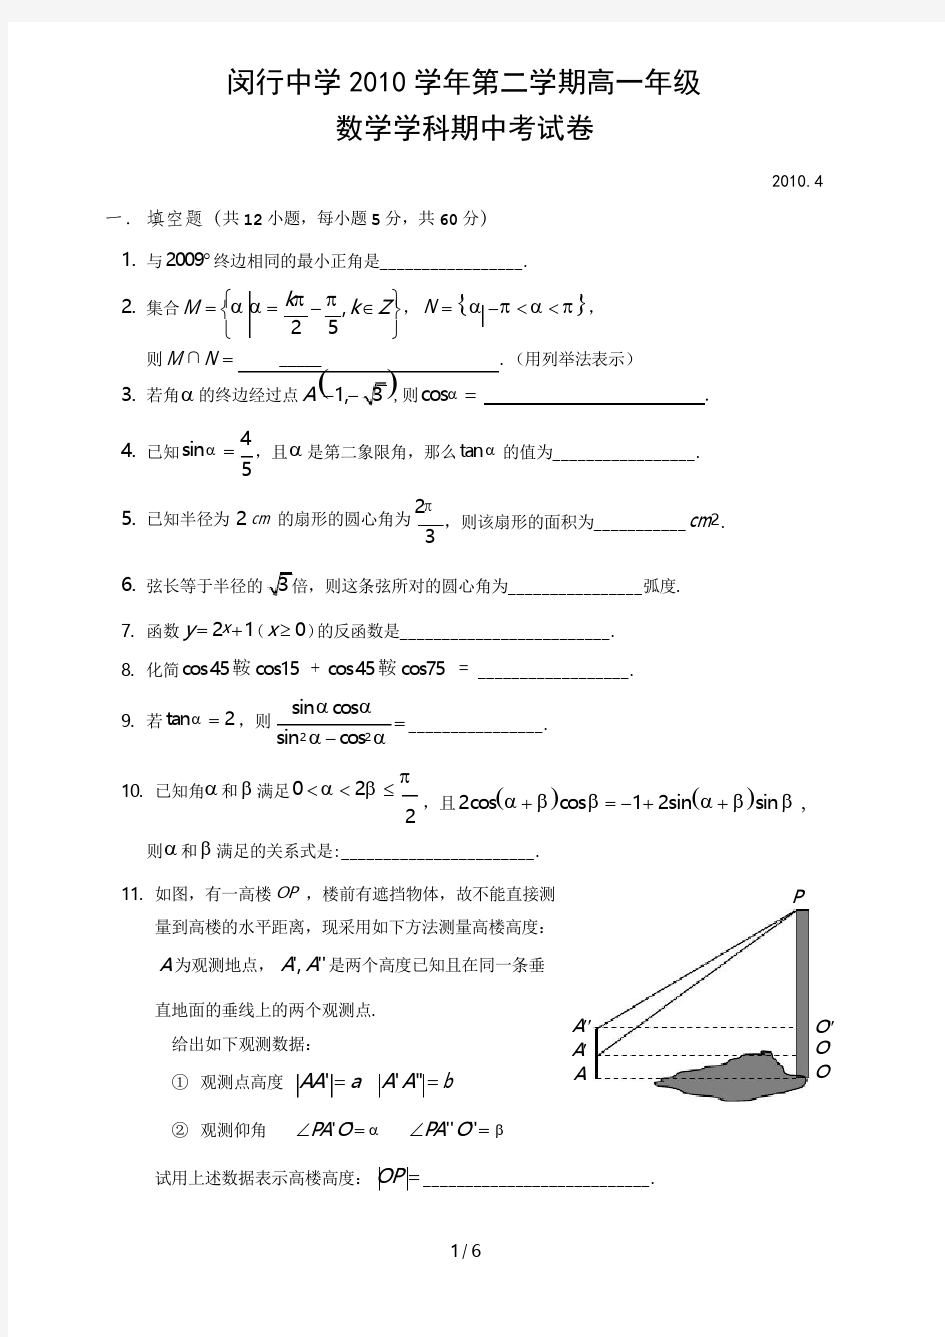 2016学年闵行中学高一年级第二学期期中考试数学试卷(附详细答案)